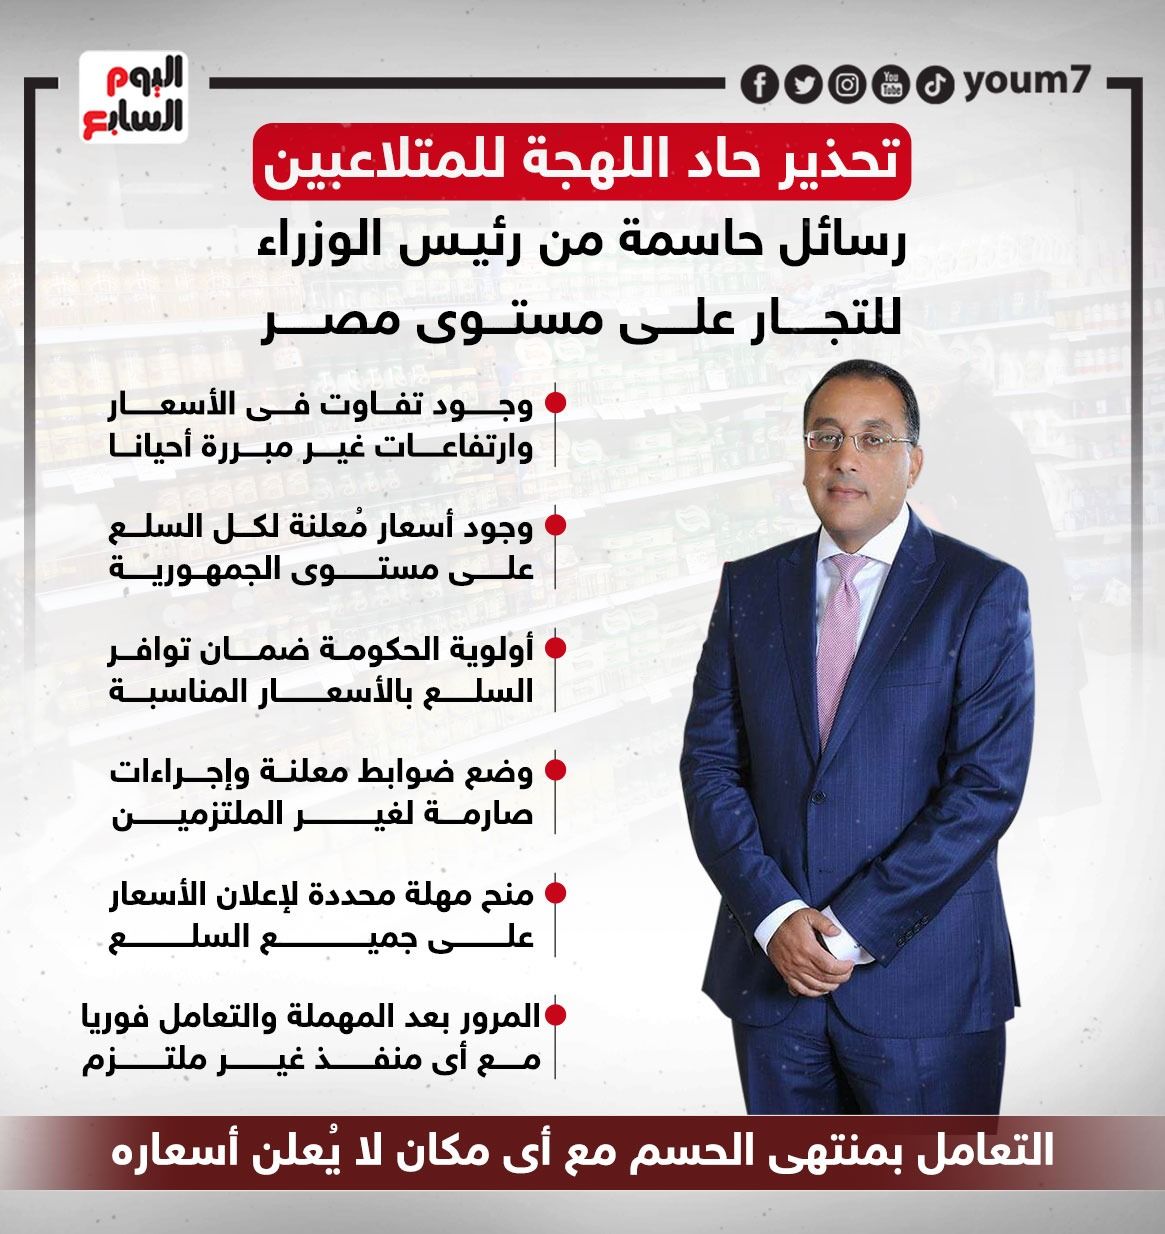 رسائل حاسمة من رئيس الوزراء للتجار على مستوى مصر